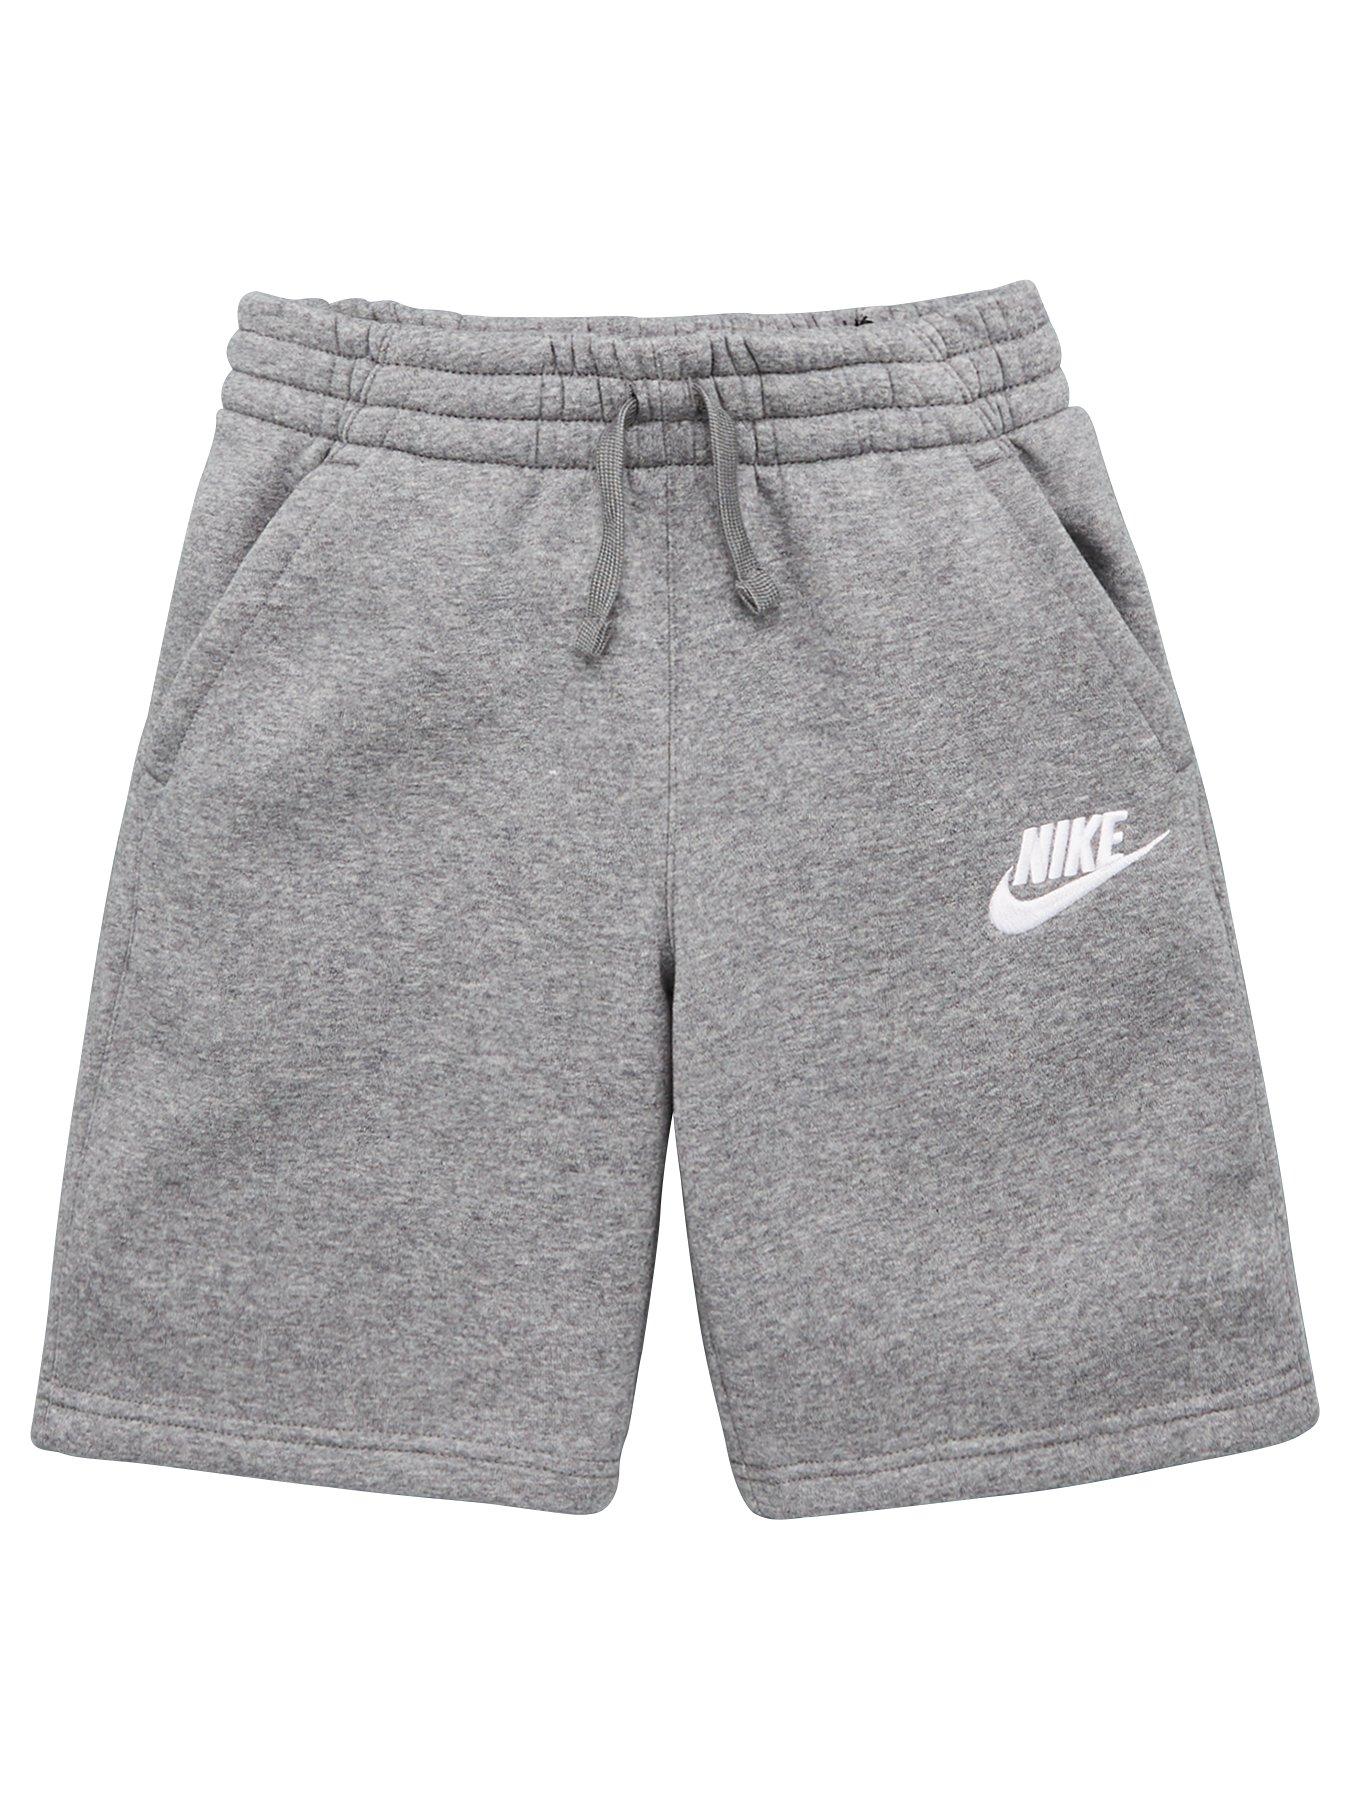 grey nike boy shorts